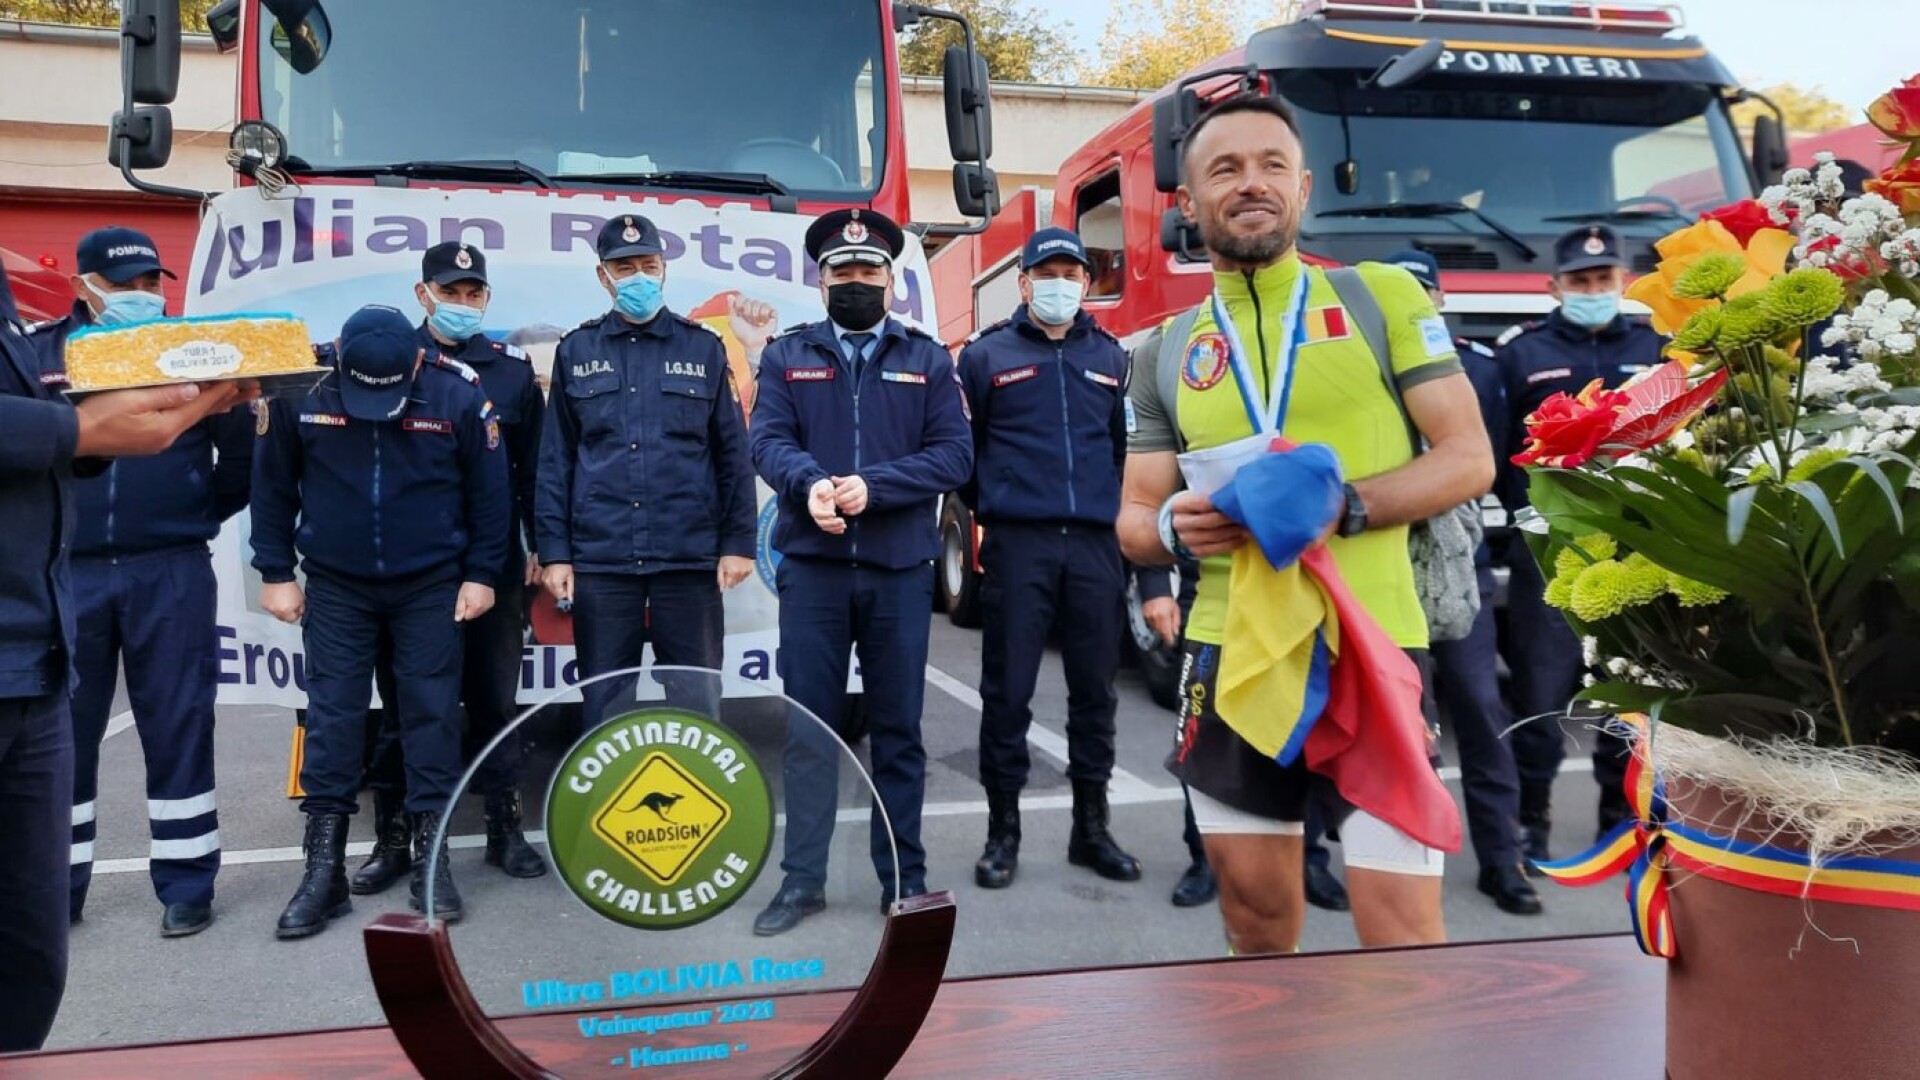 Povestea uluitoare a pompierului din Botoșani care a câștigat ultramaratonul din Anzi. A alergat flămând și cu hernie